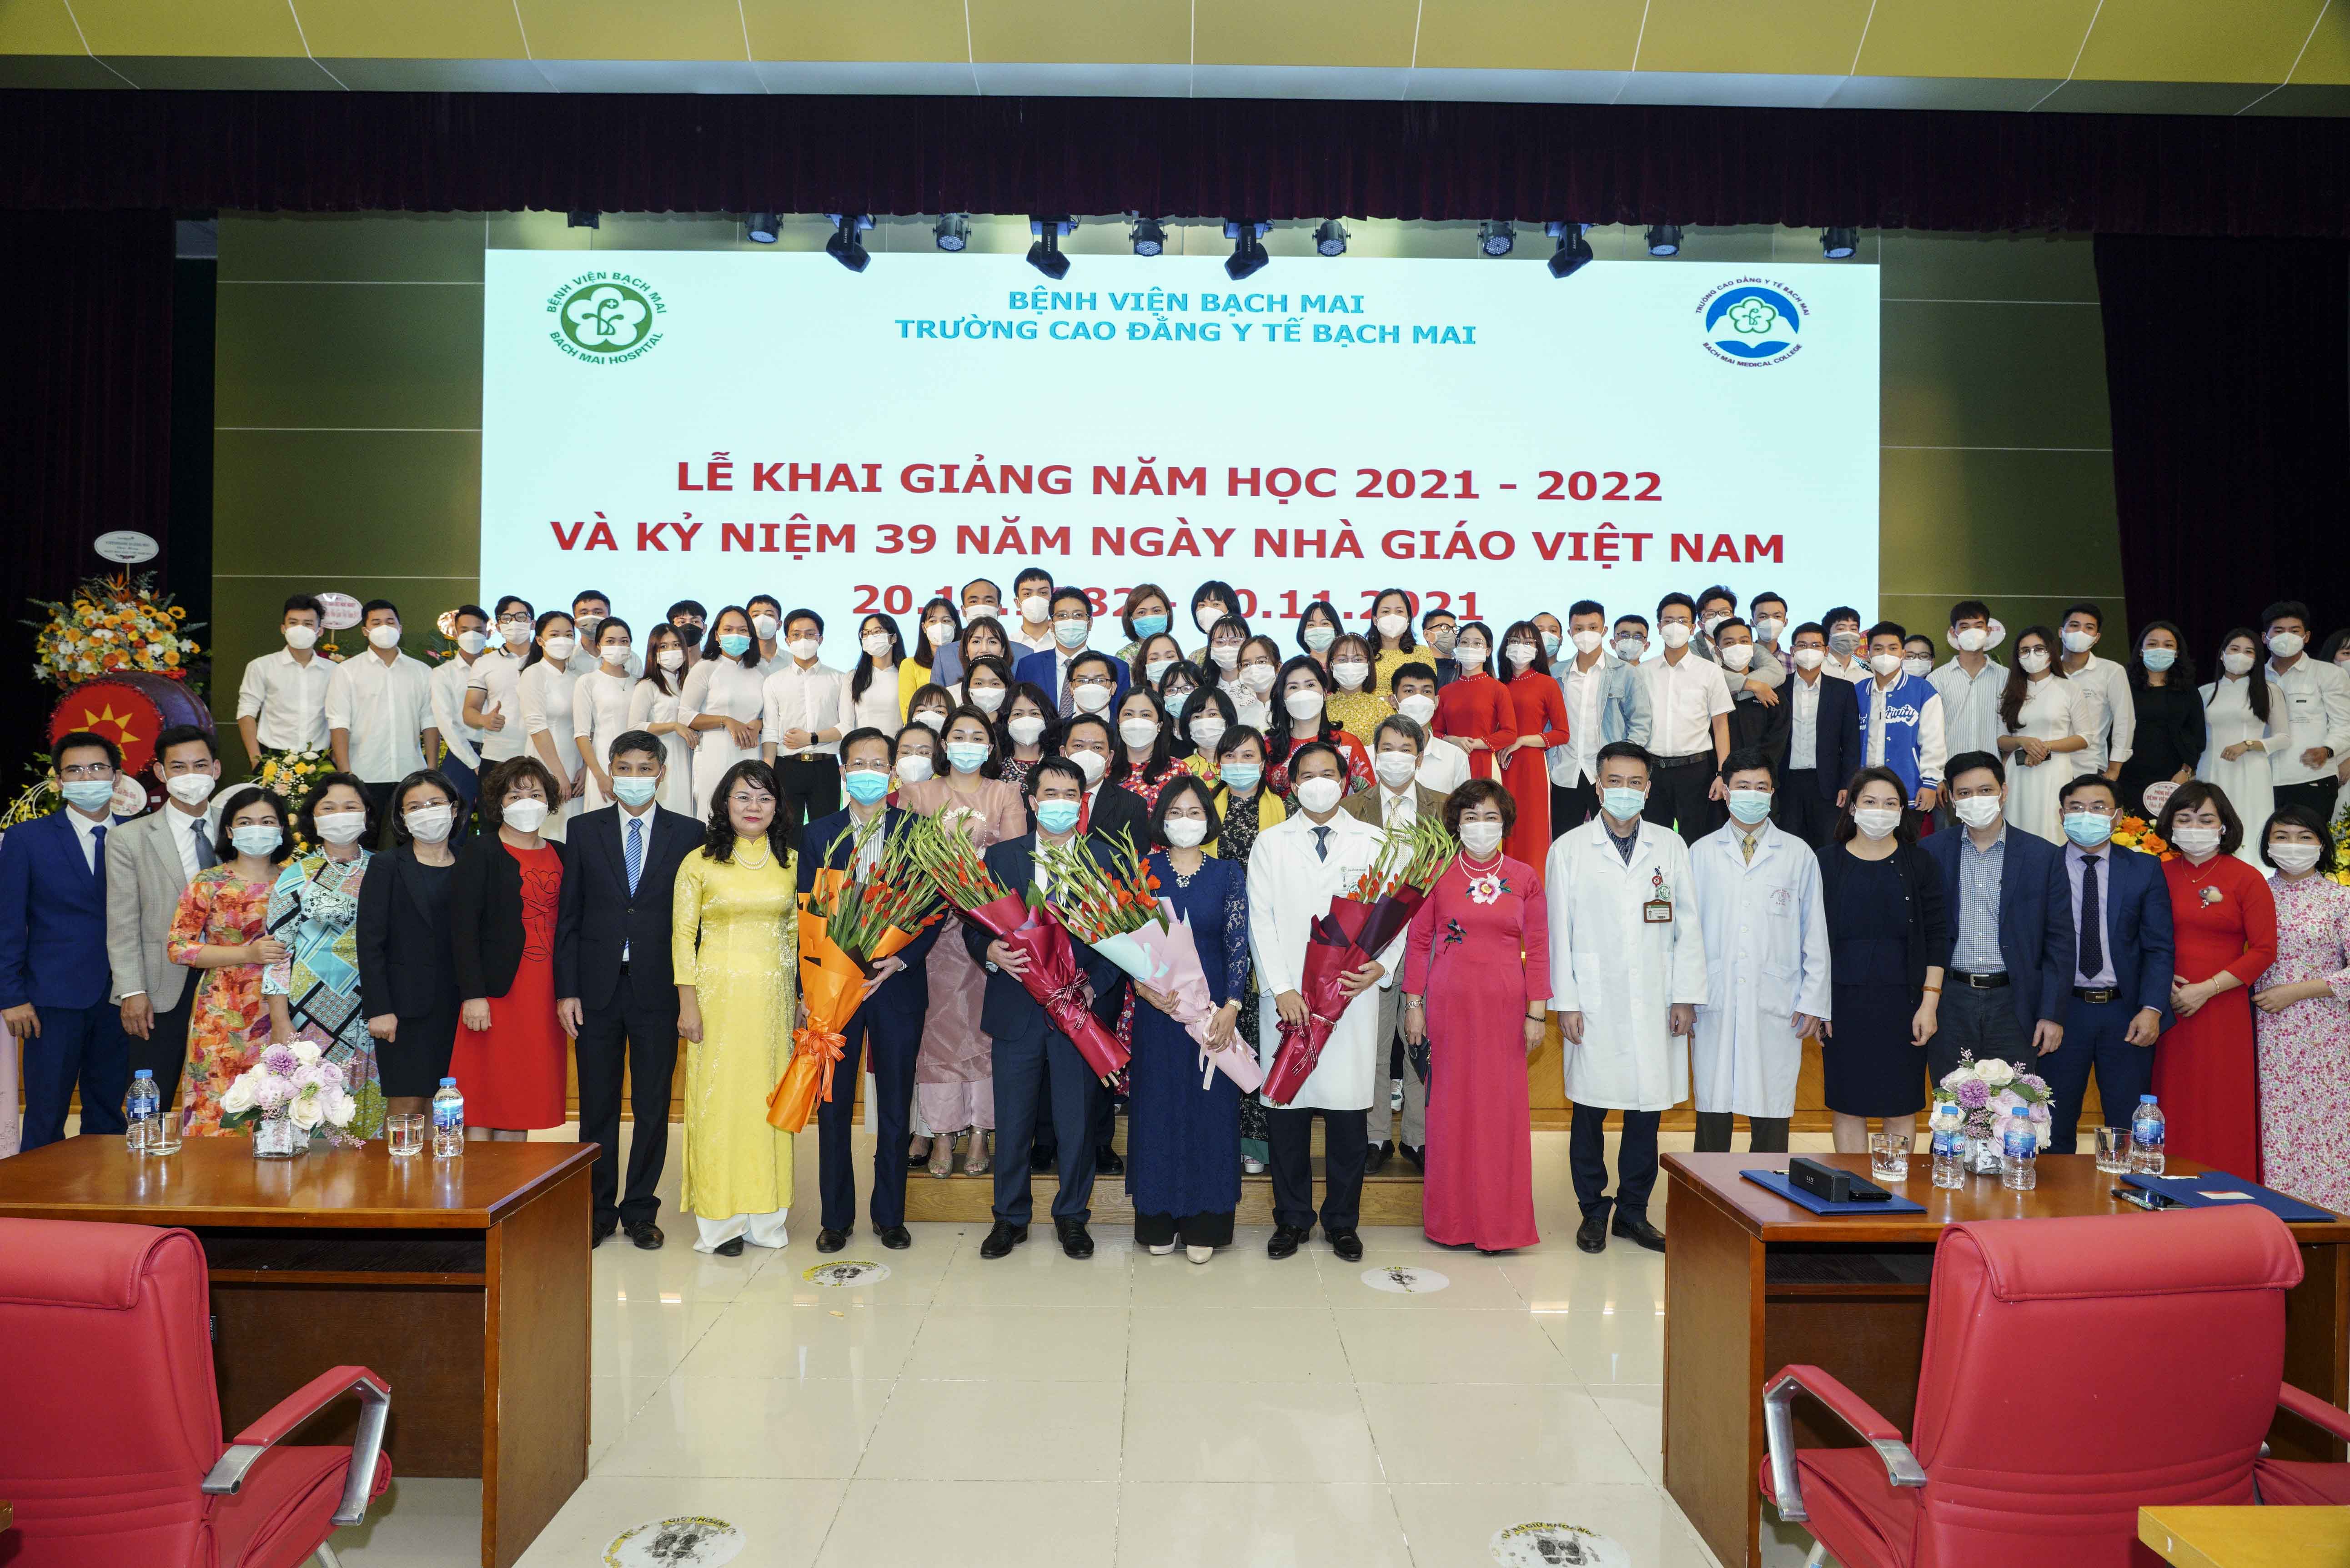 Trường Cao đẳng y tế Bạch Mai khai giảng năm học 2021-2022 và kỷ niệm Ngày nhà giáo Việt Nam 20/11